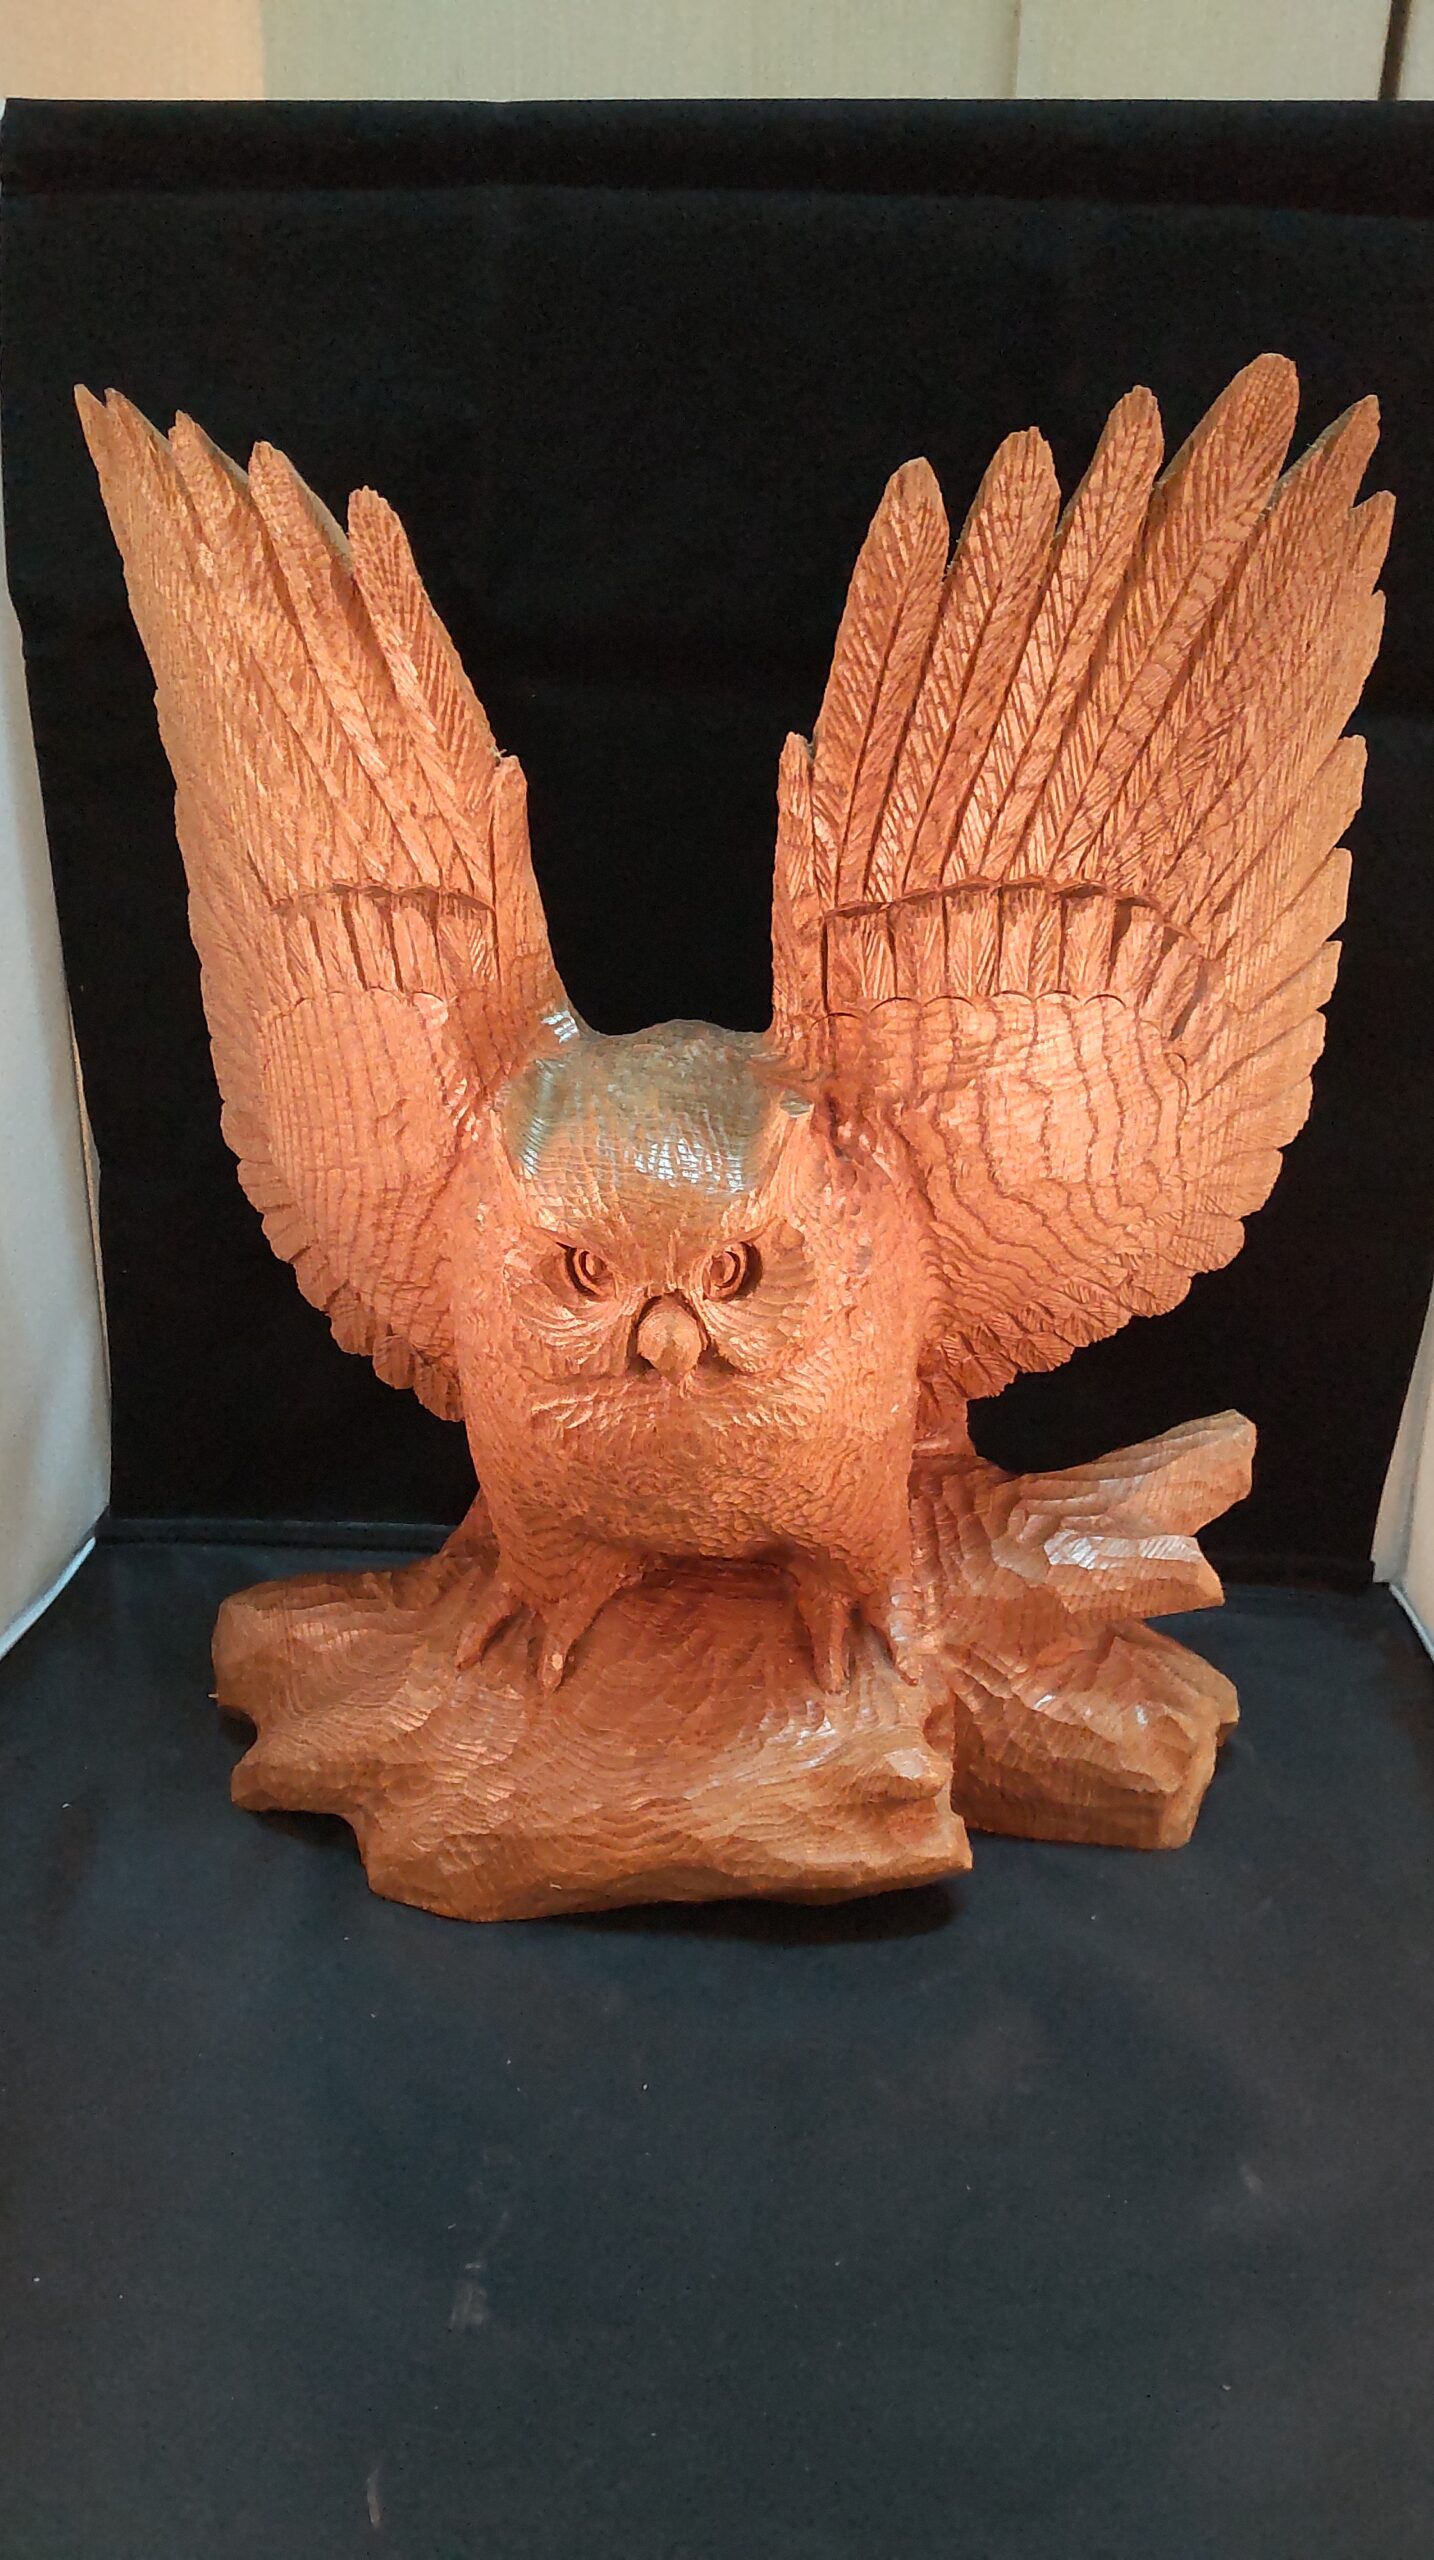 木彫りのフクロウの見方 6 羽を広げたフクロウ 技術力 | 木彫り屋店長 まさまる日記